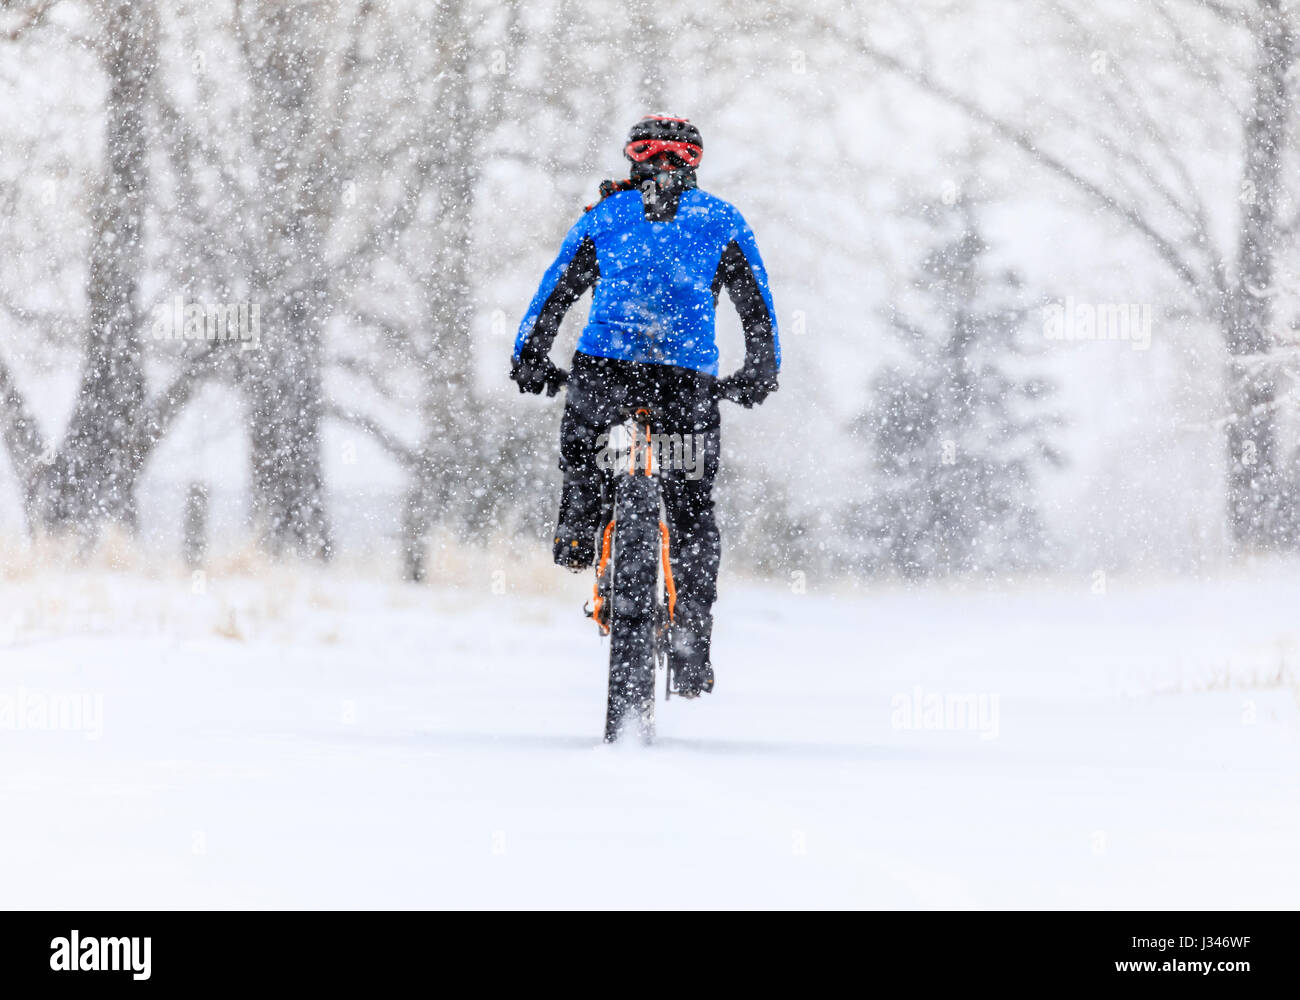 Équitation, un gros vélo dans une tempête hivernale, Thunder Bay, Ontario, Canada. Banque D'Images